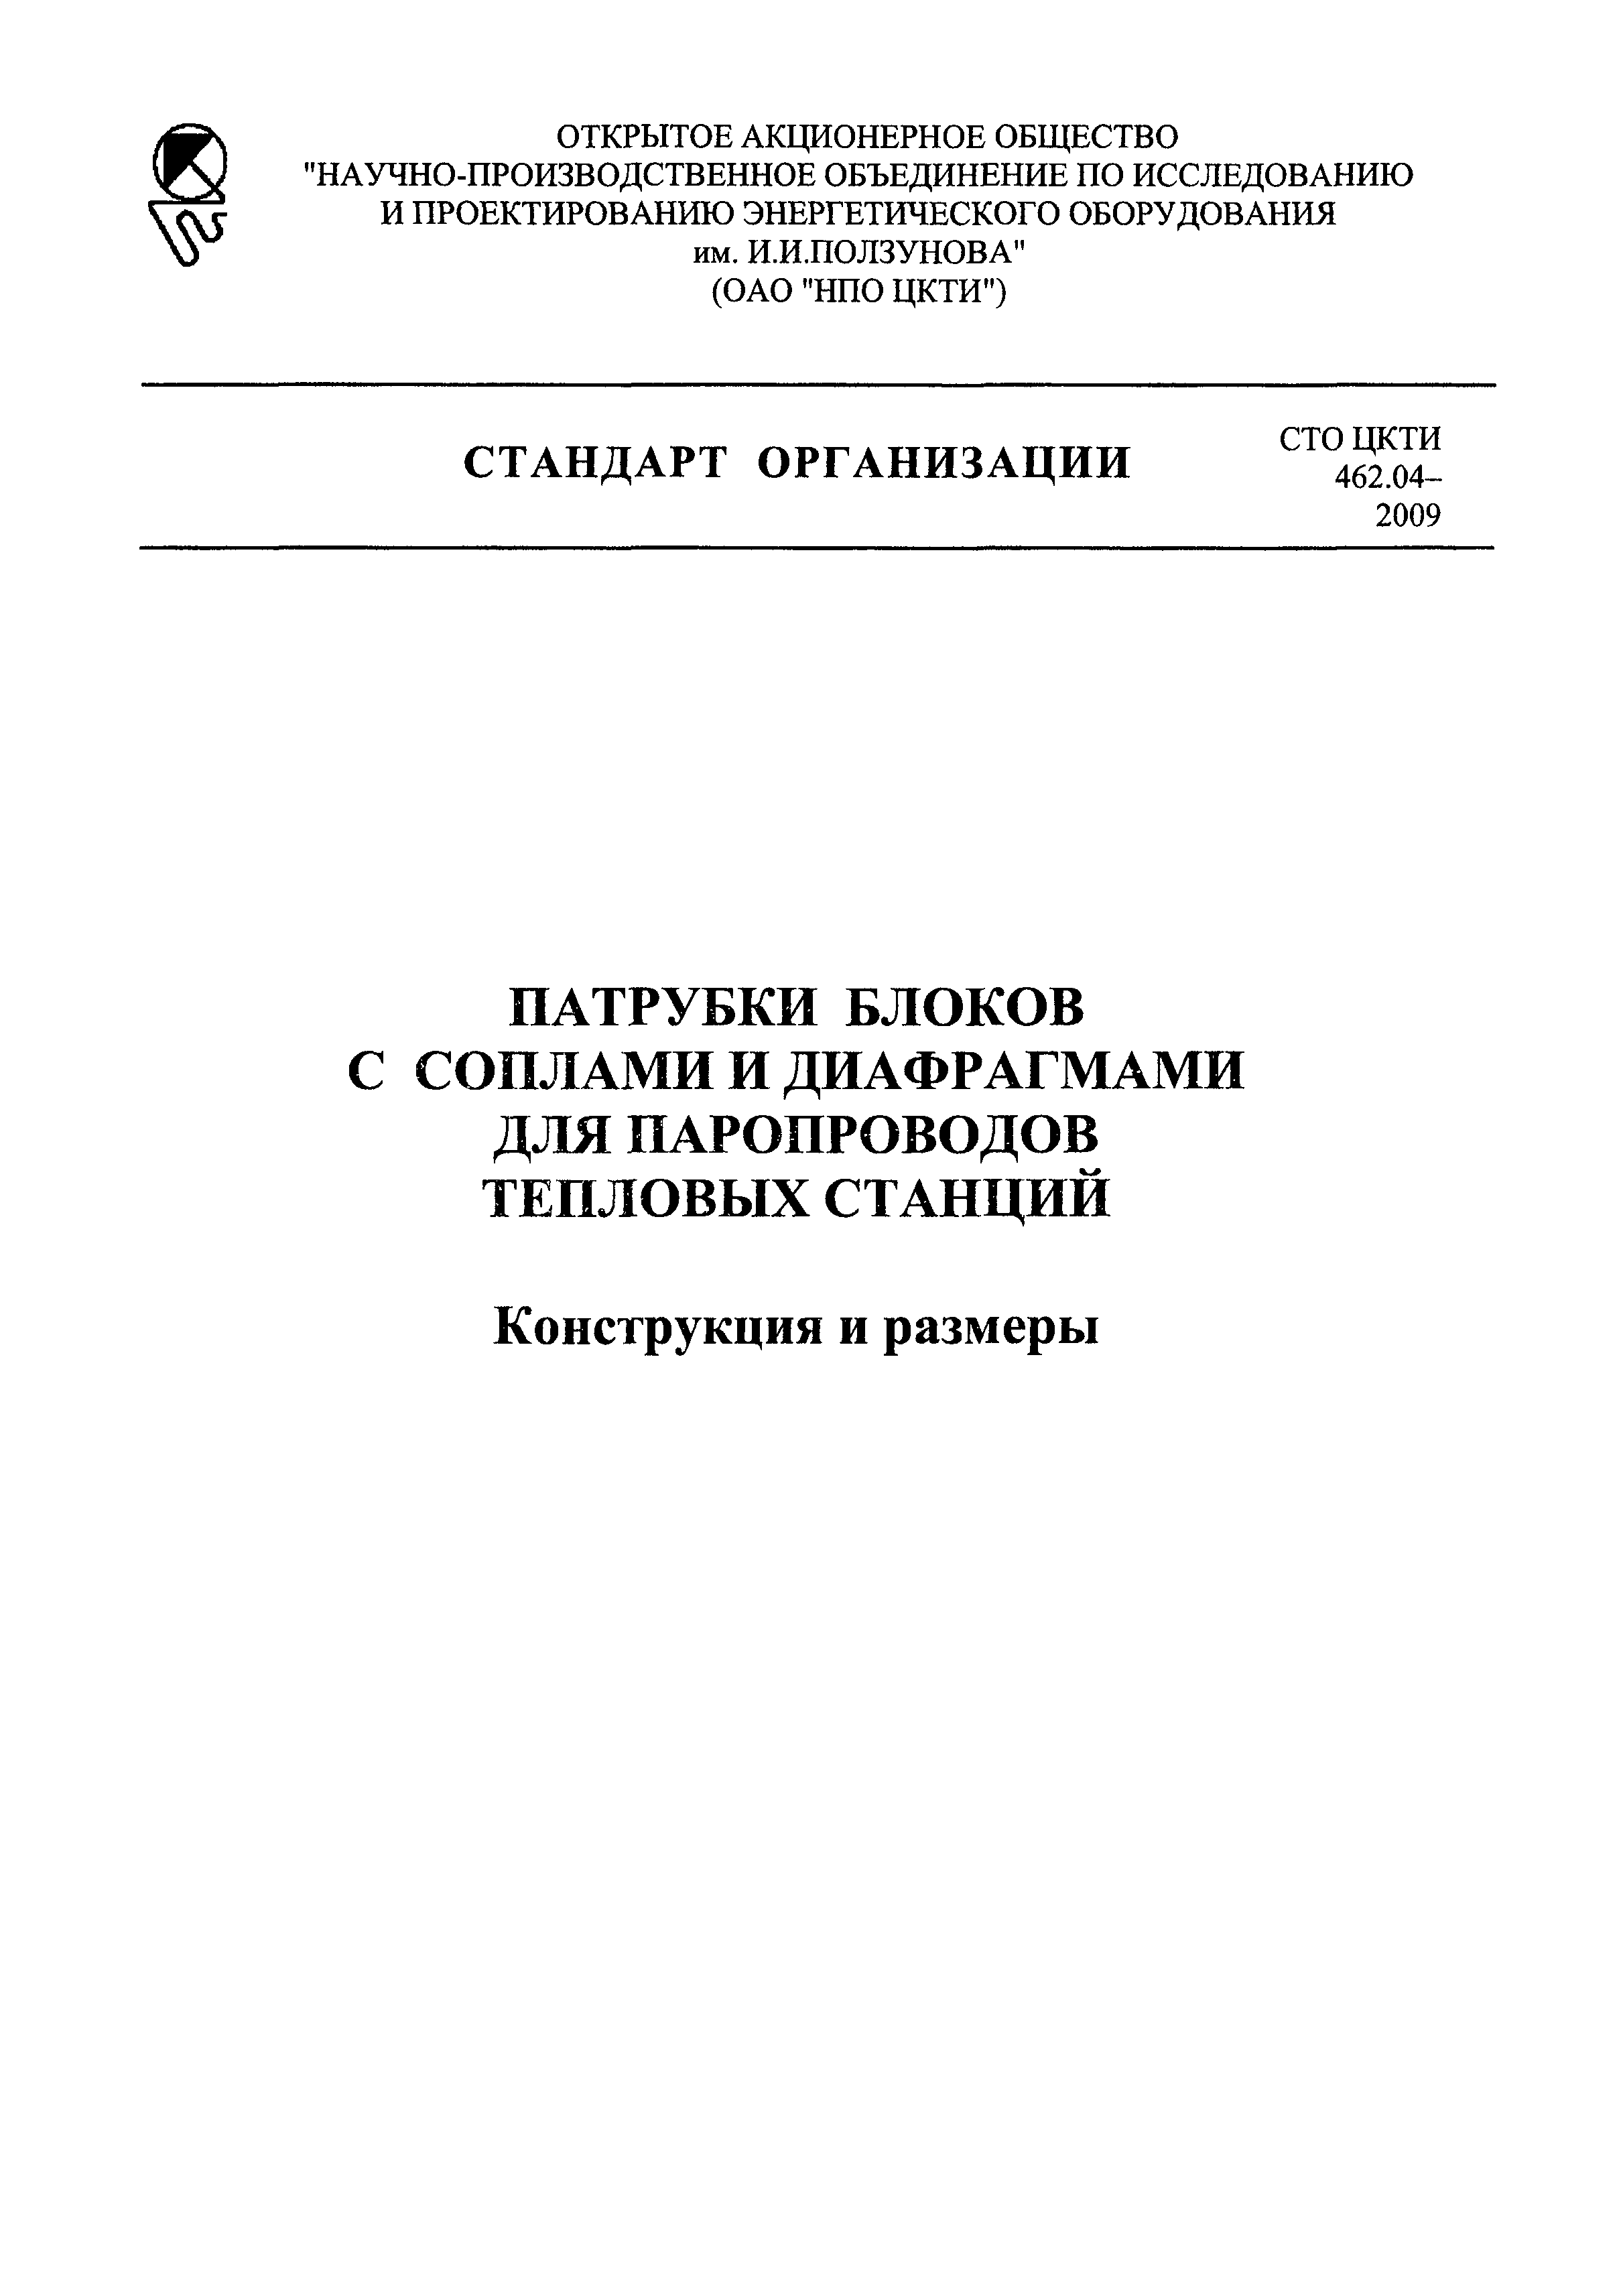 СТО ЦКТИ 462.04-2009